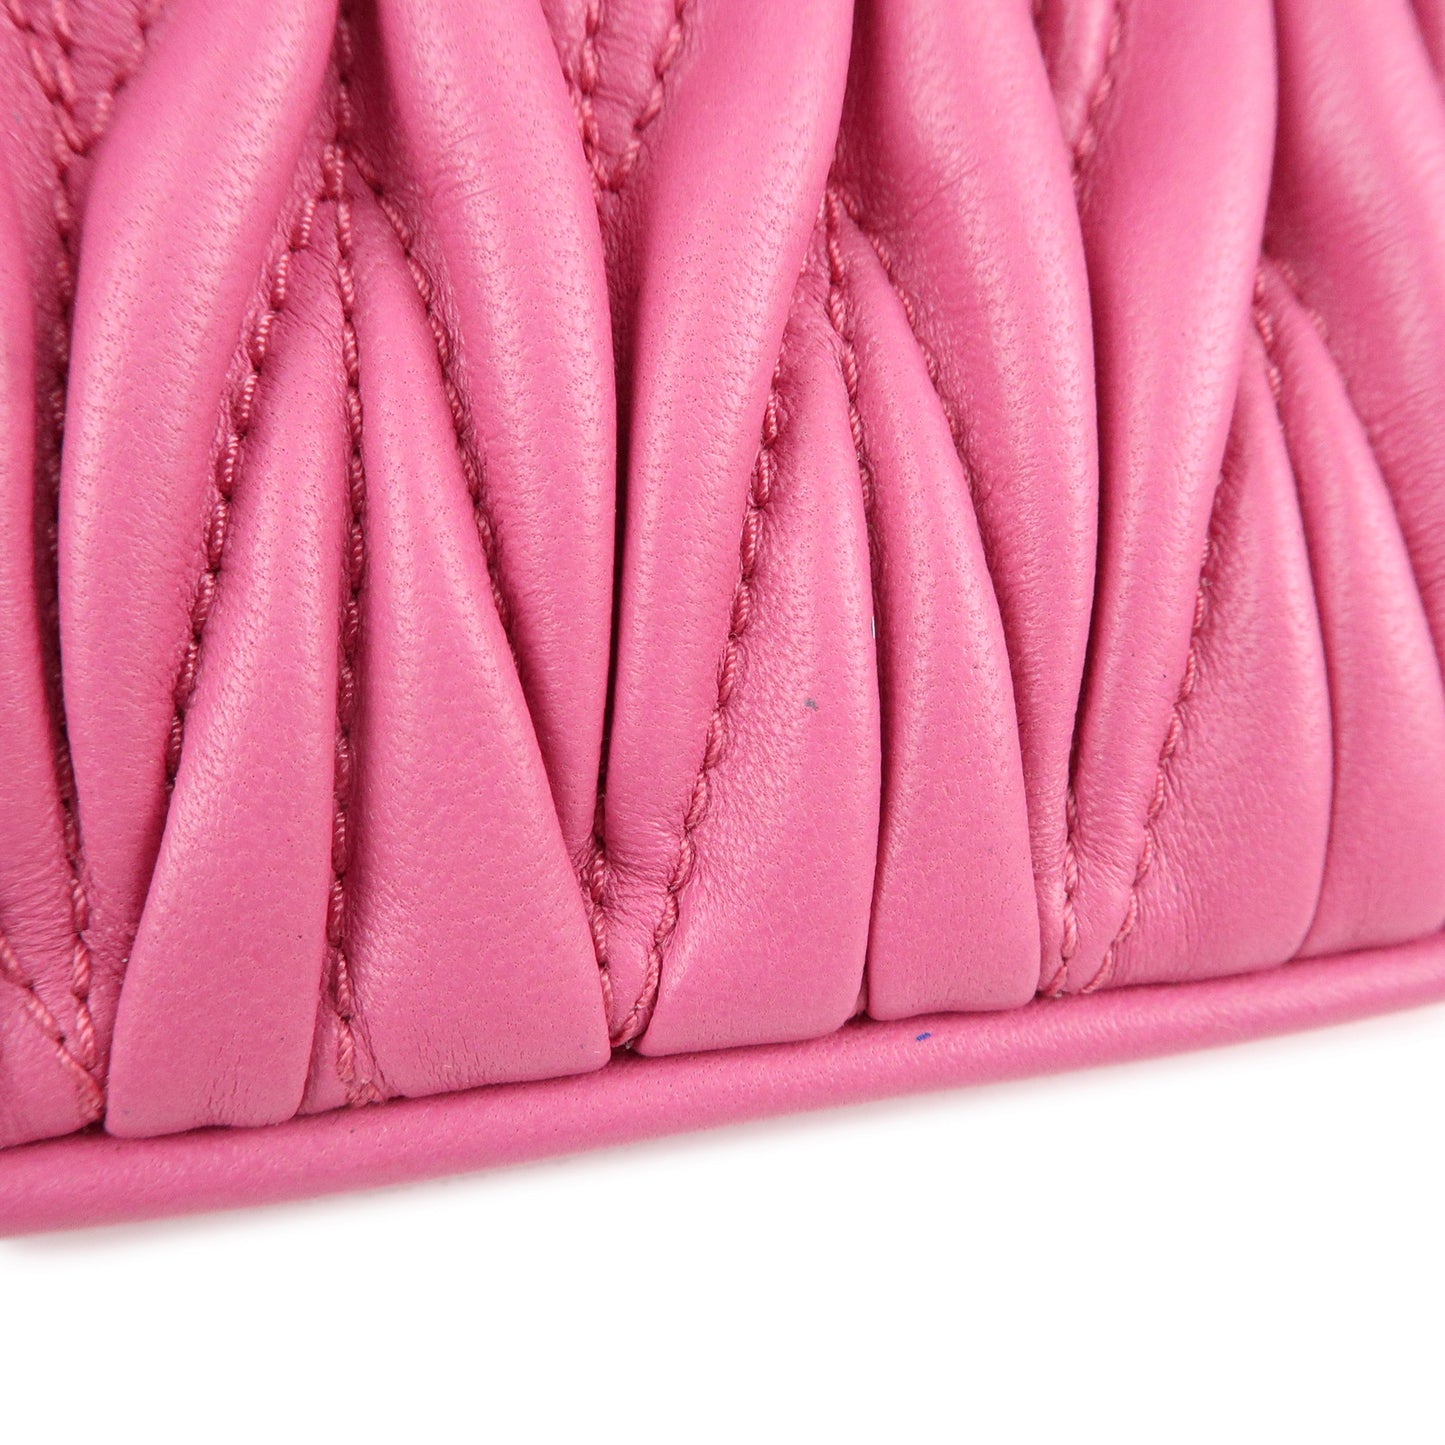 MIU MIU Matelasse Leather Chain Shoulder Bag Pink 5BH126